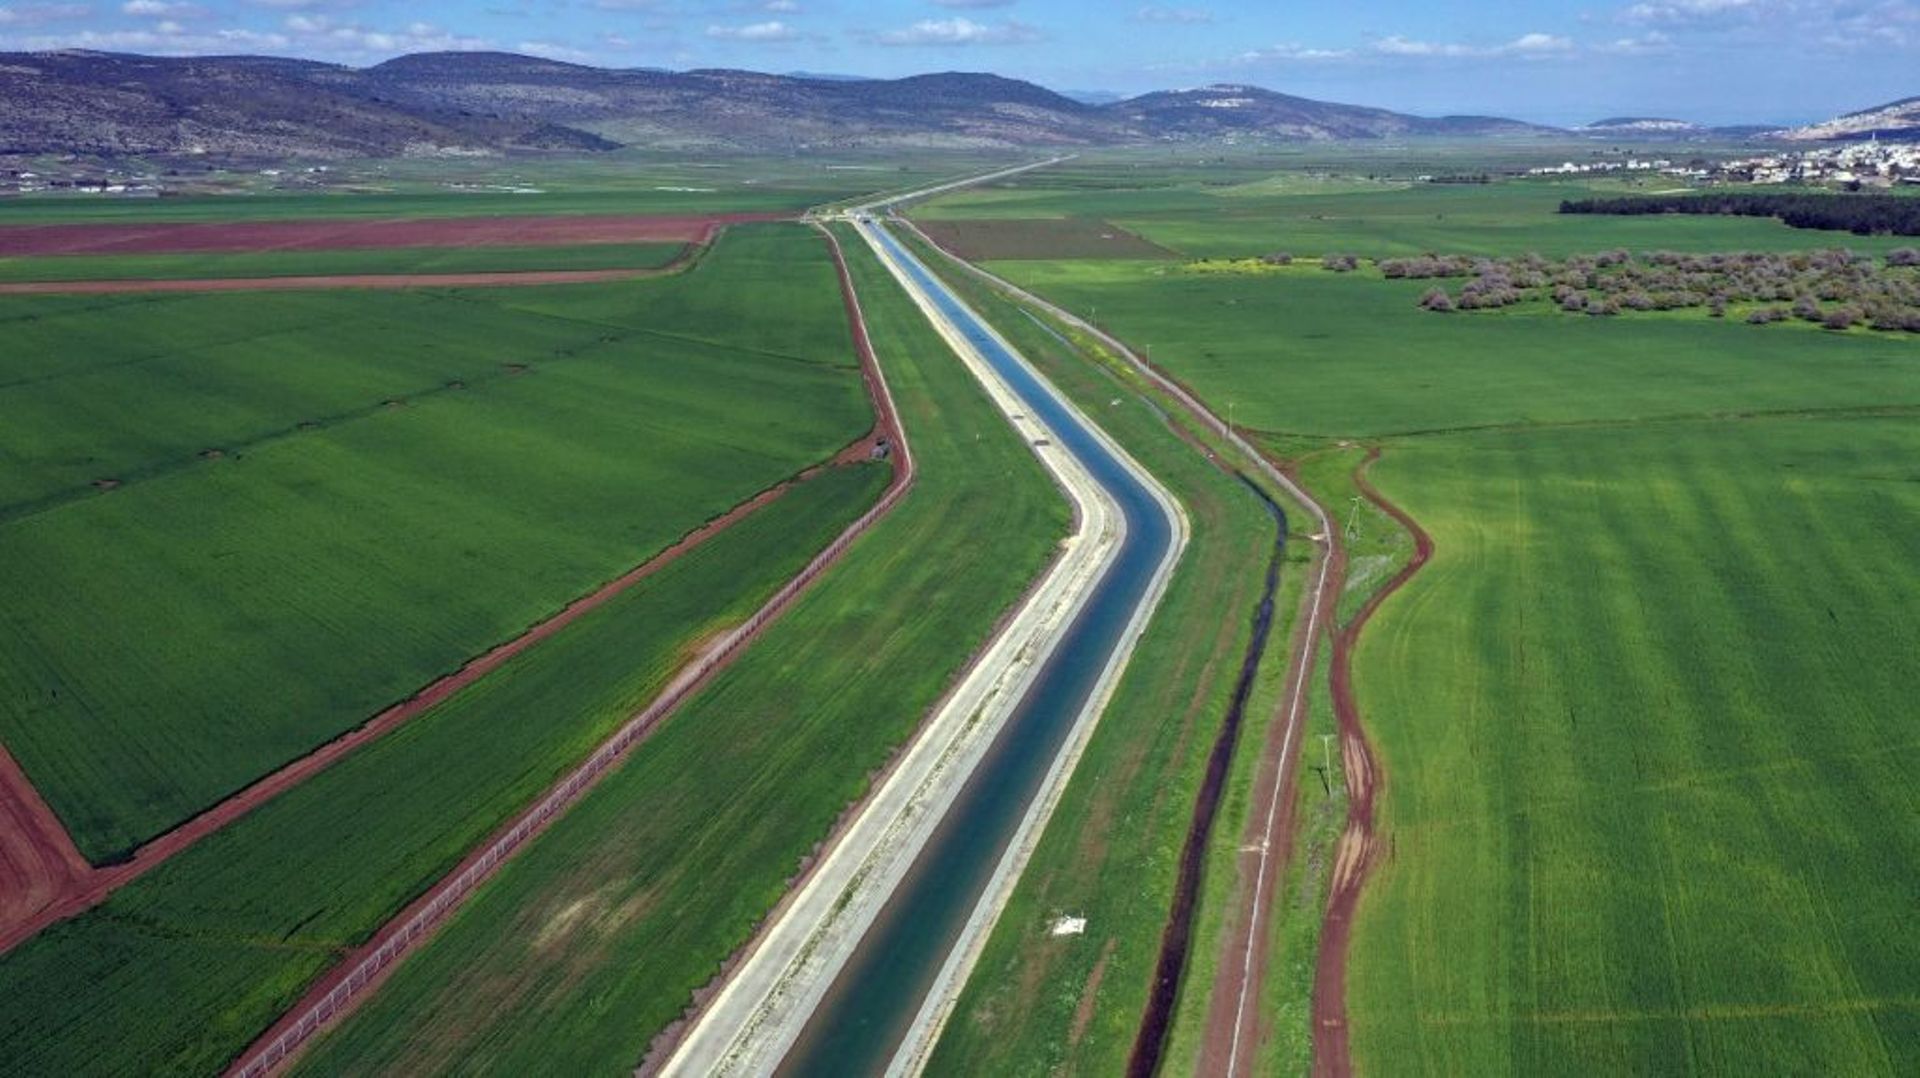 Israël a commencé à mettre en place une nouvelle canalisation pour transporter l’eau dessalée de la mer Méditerranée, afin de remplir le lac de Tibériade, principal réservoir d’eau d’Israël